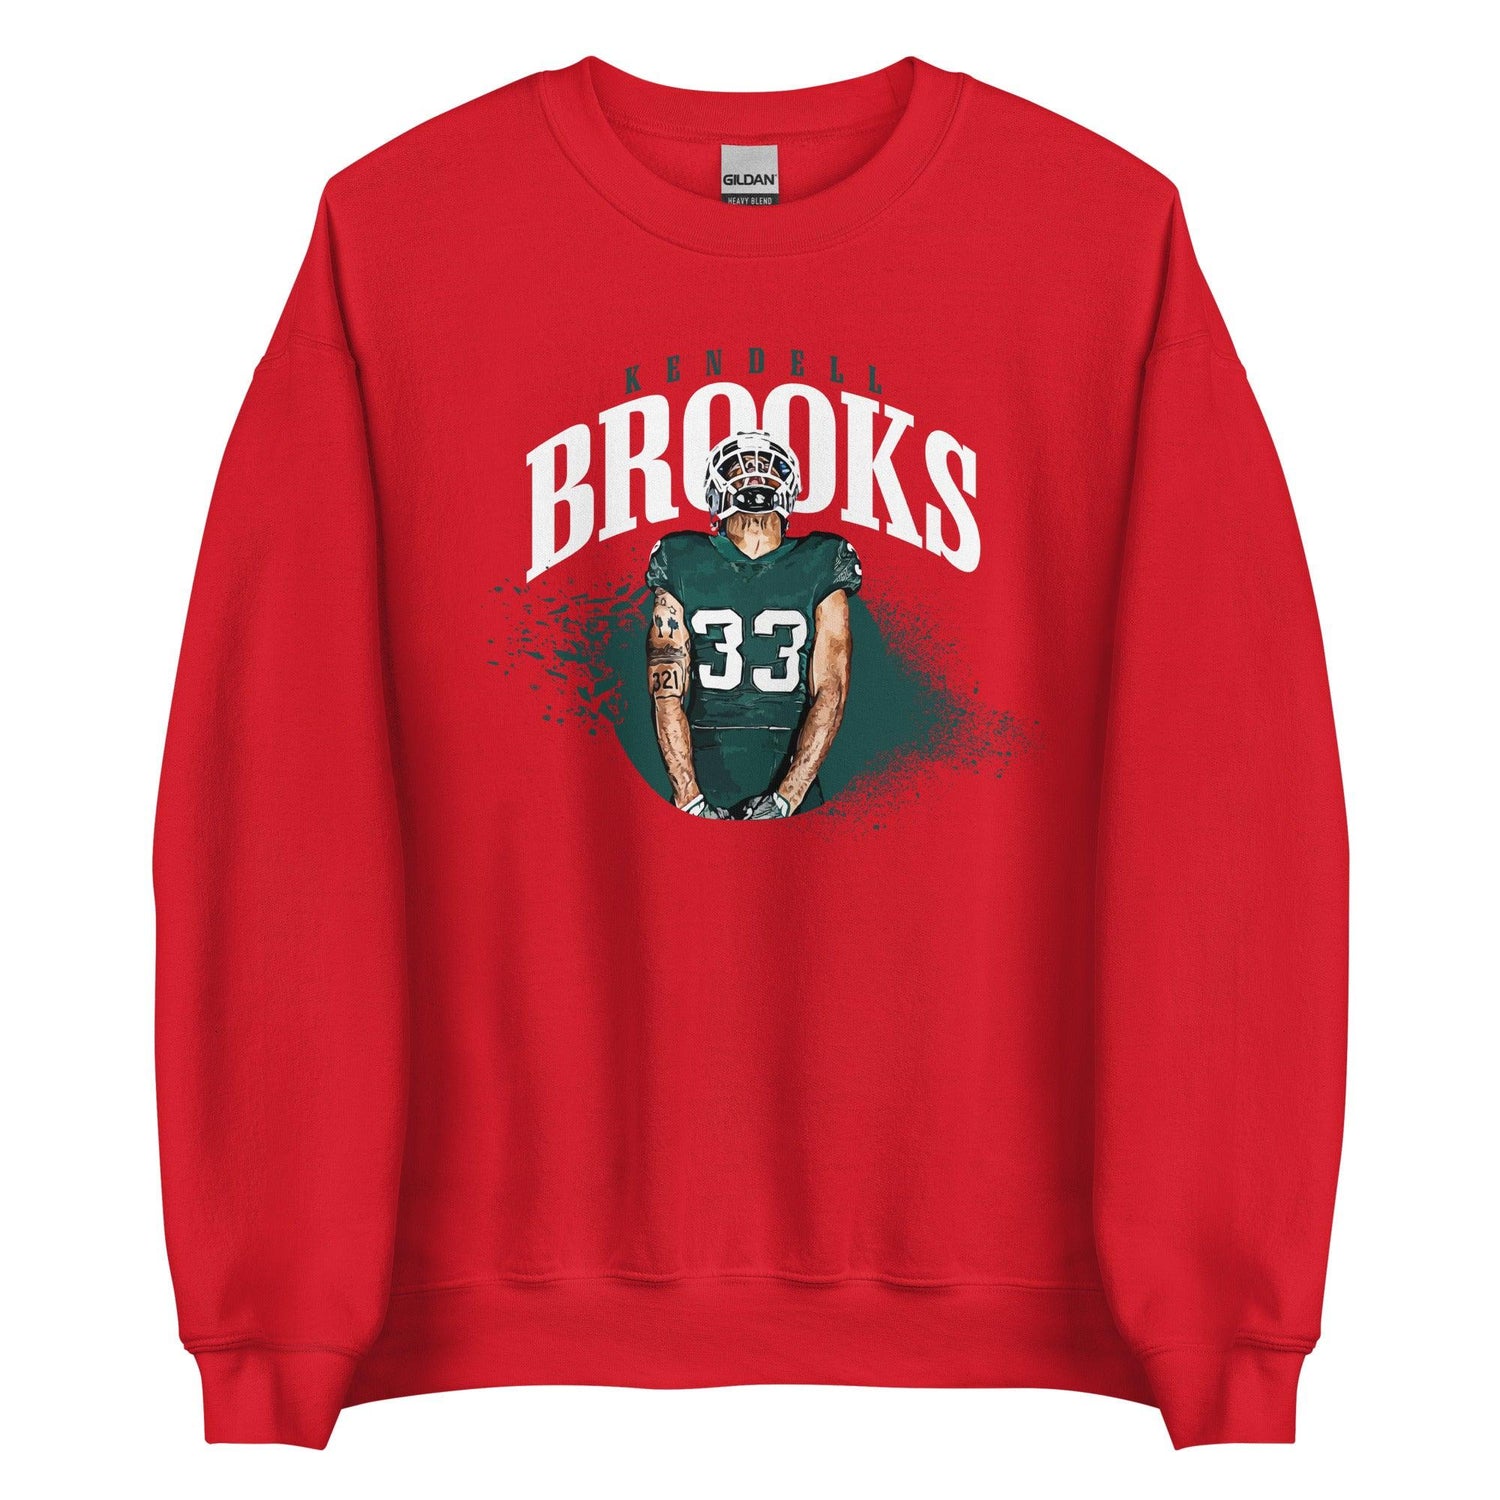 Kendell Brooks "Gametime" Sweatshirt - Fan Arch